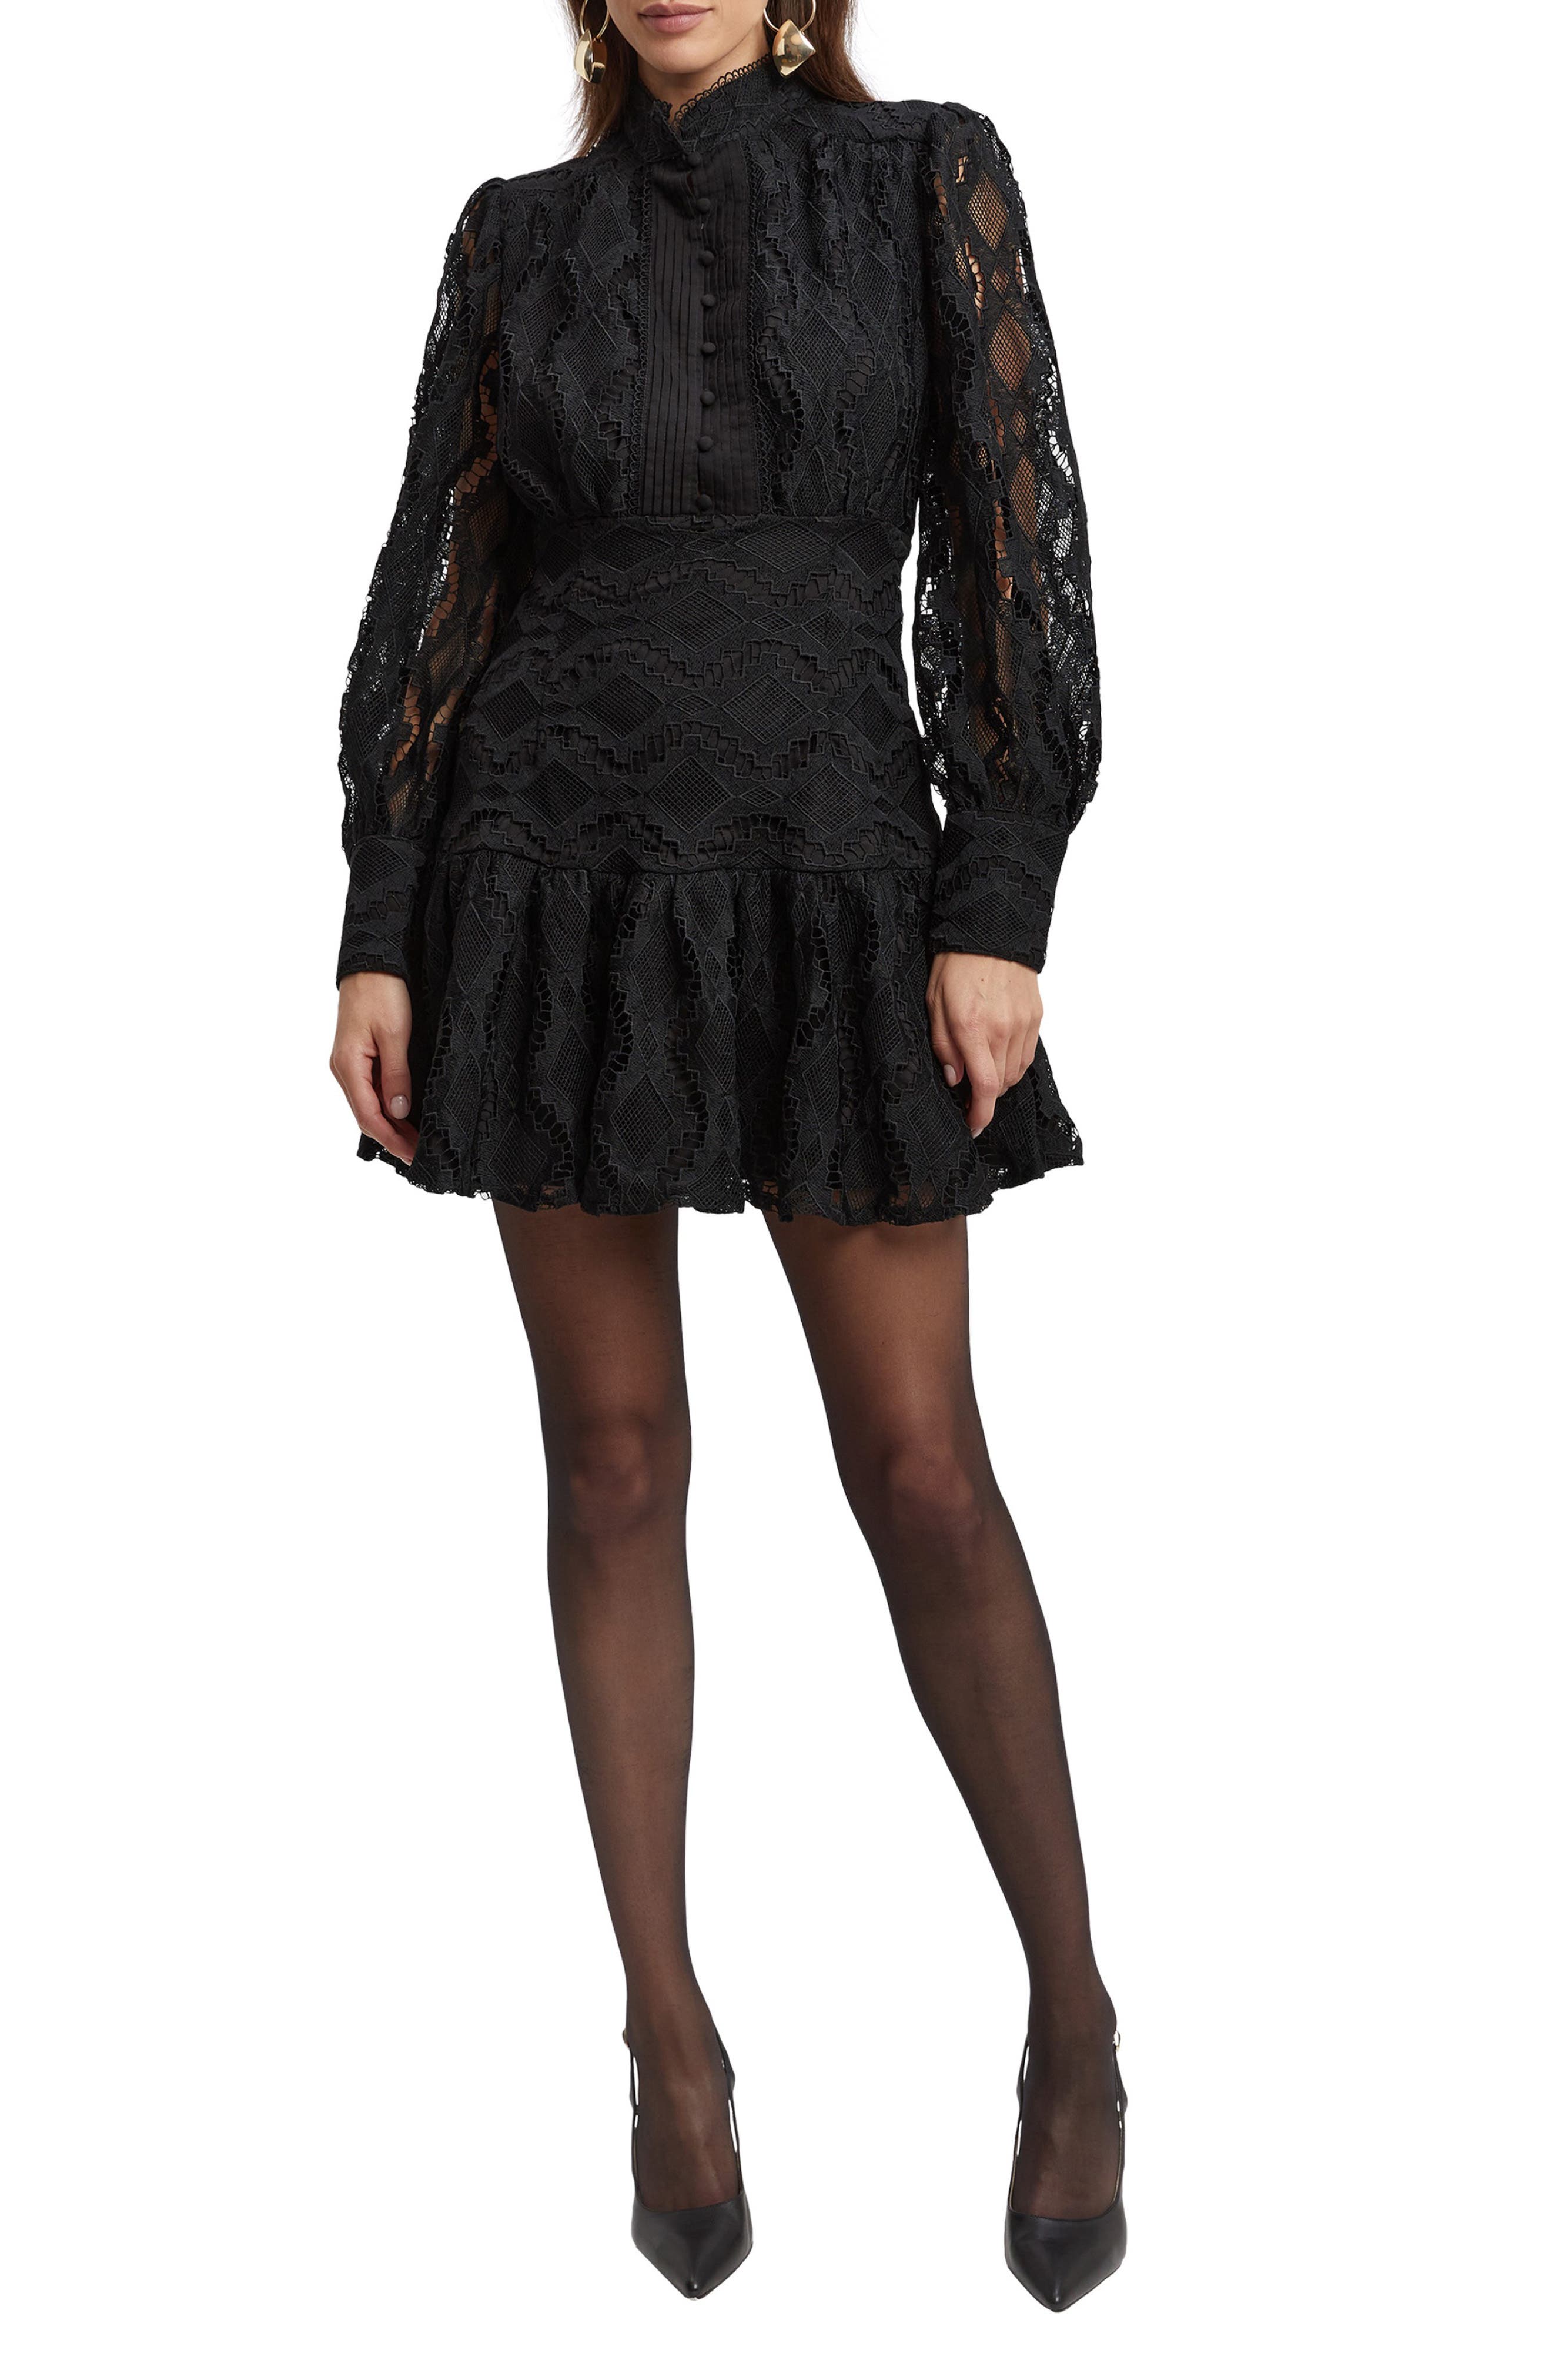 black lace cocktail dress